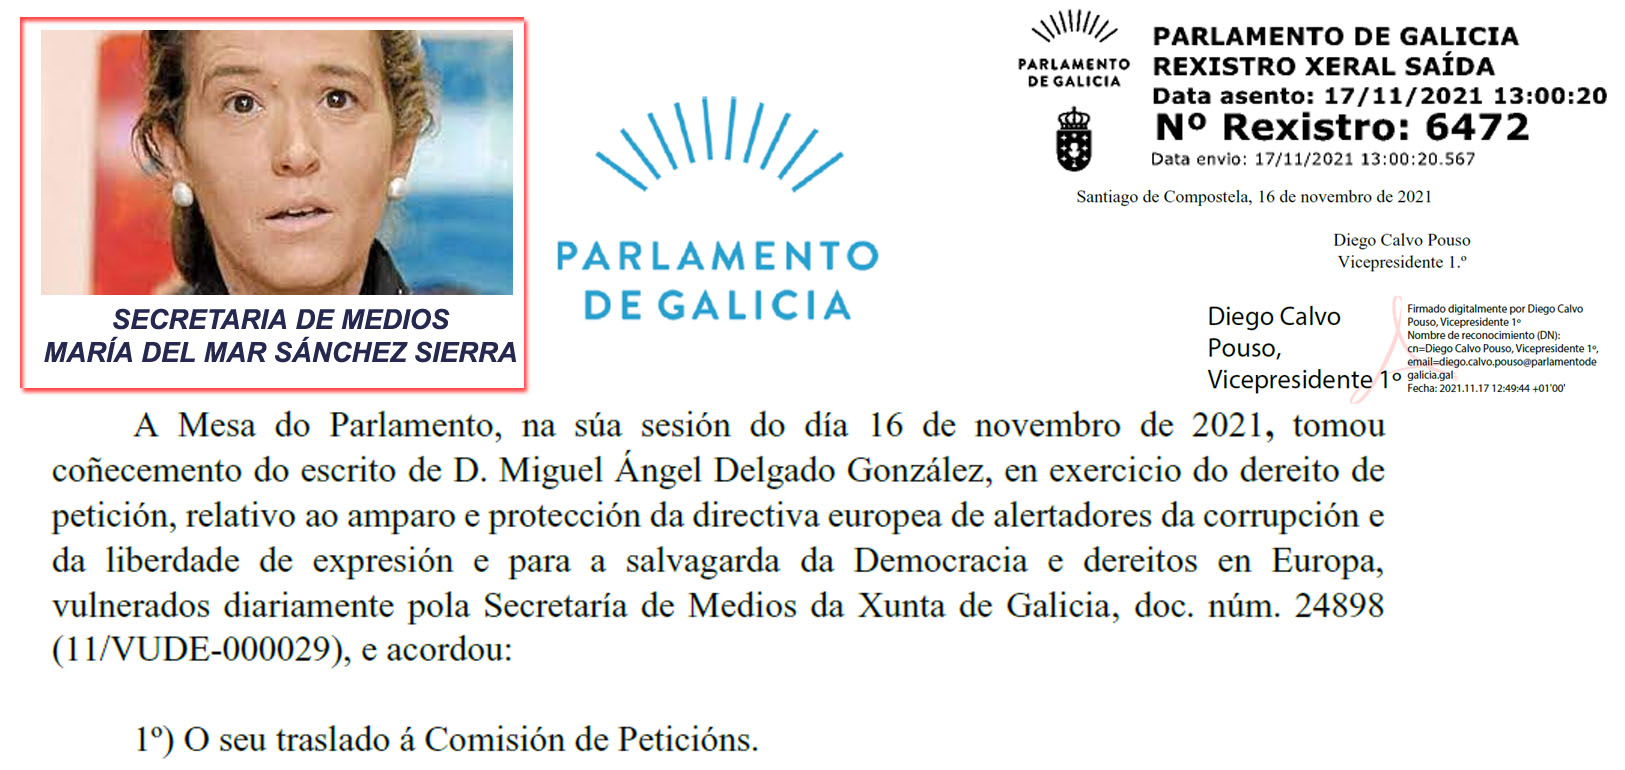 Xornal Galicia - Evento presencial: Presentación del Índice de Percepción  de la Corrupción. PLADESEMAPESGA repartirá gratuitamente dossiers entre los  asistentes sobre Mar Sánchez Sierra